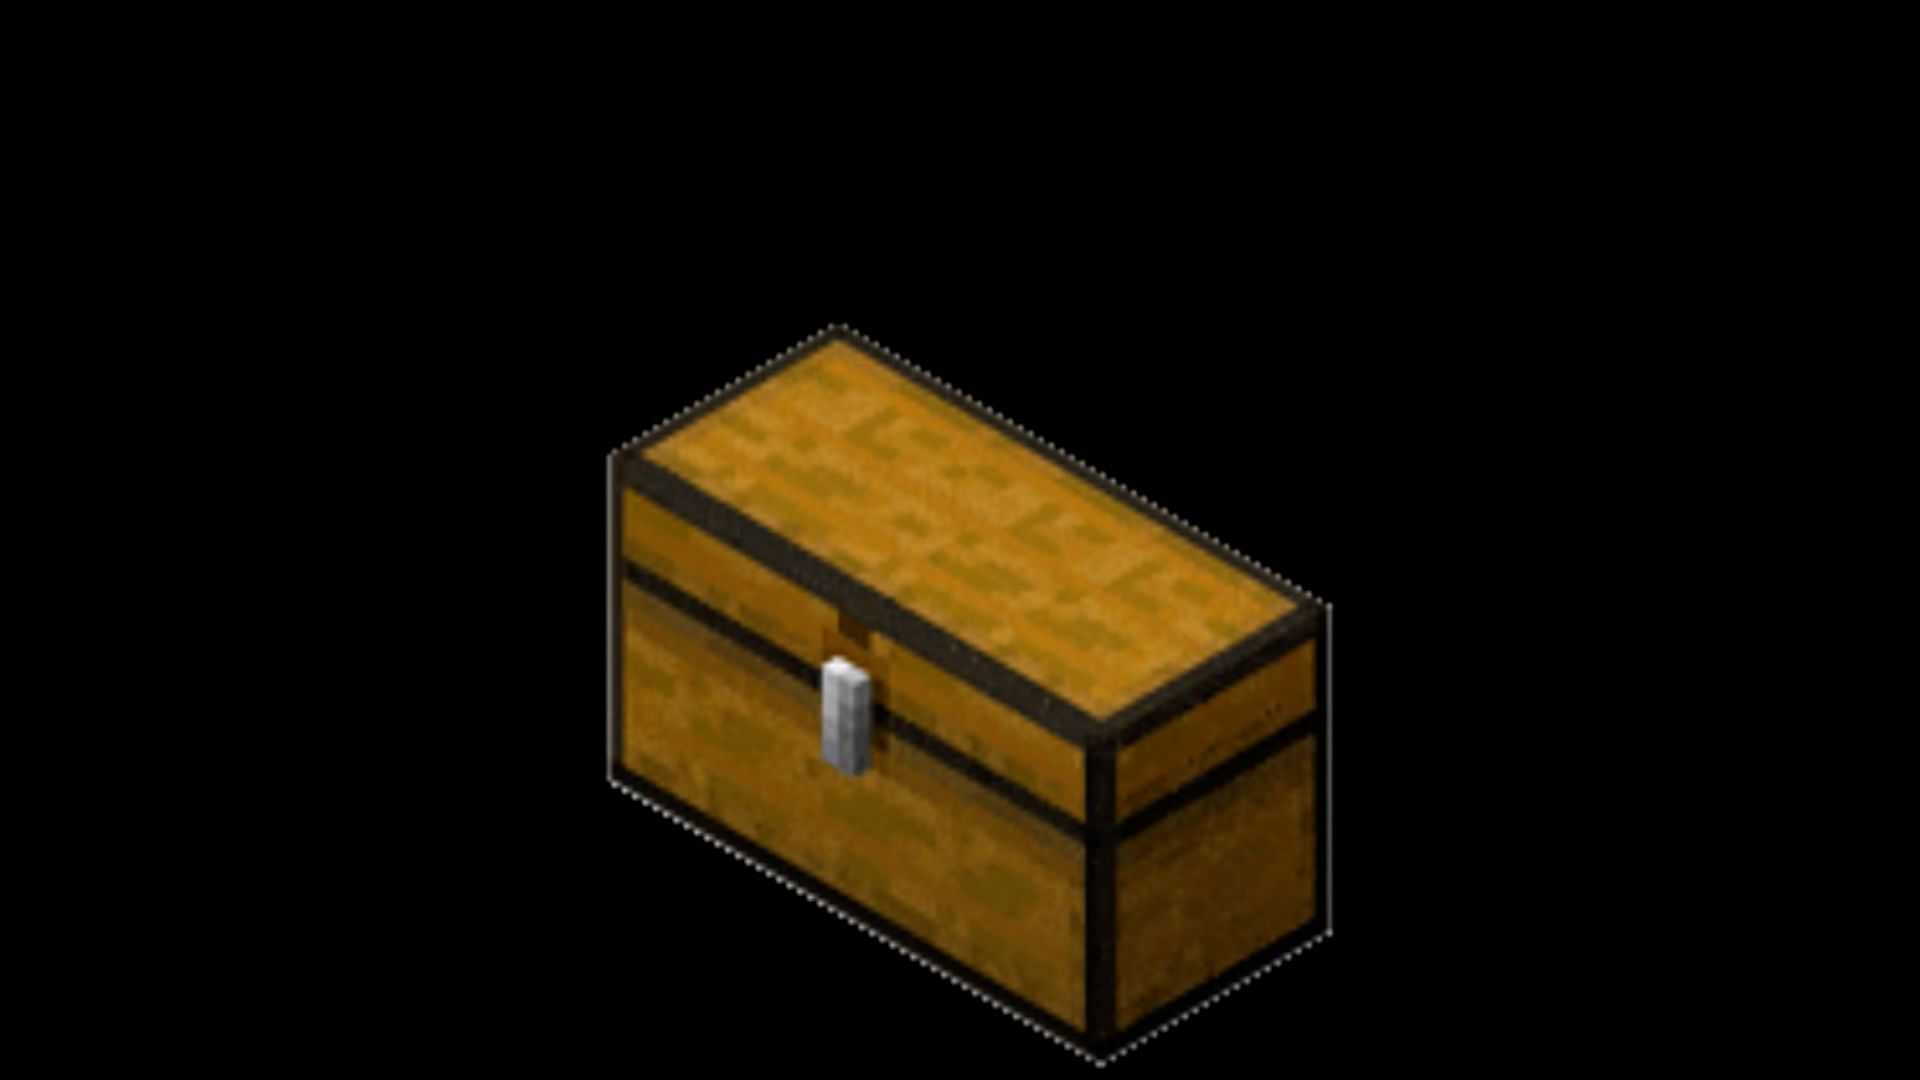 minecraft chest